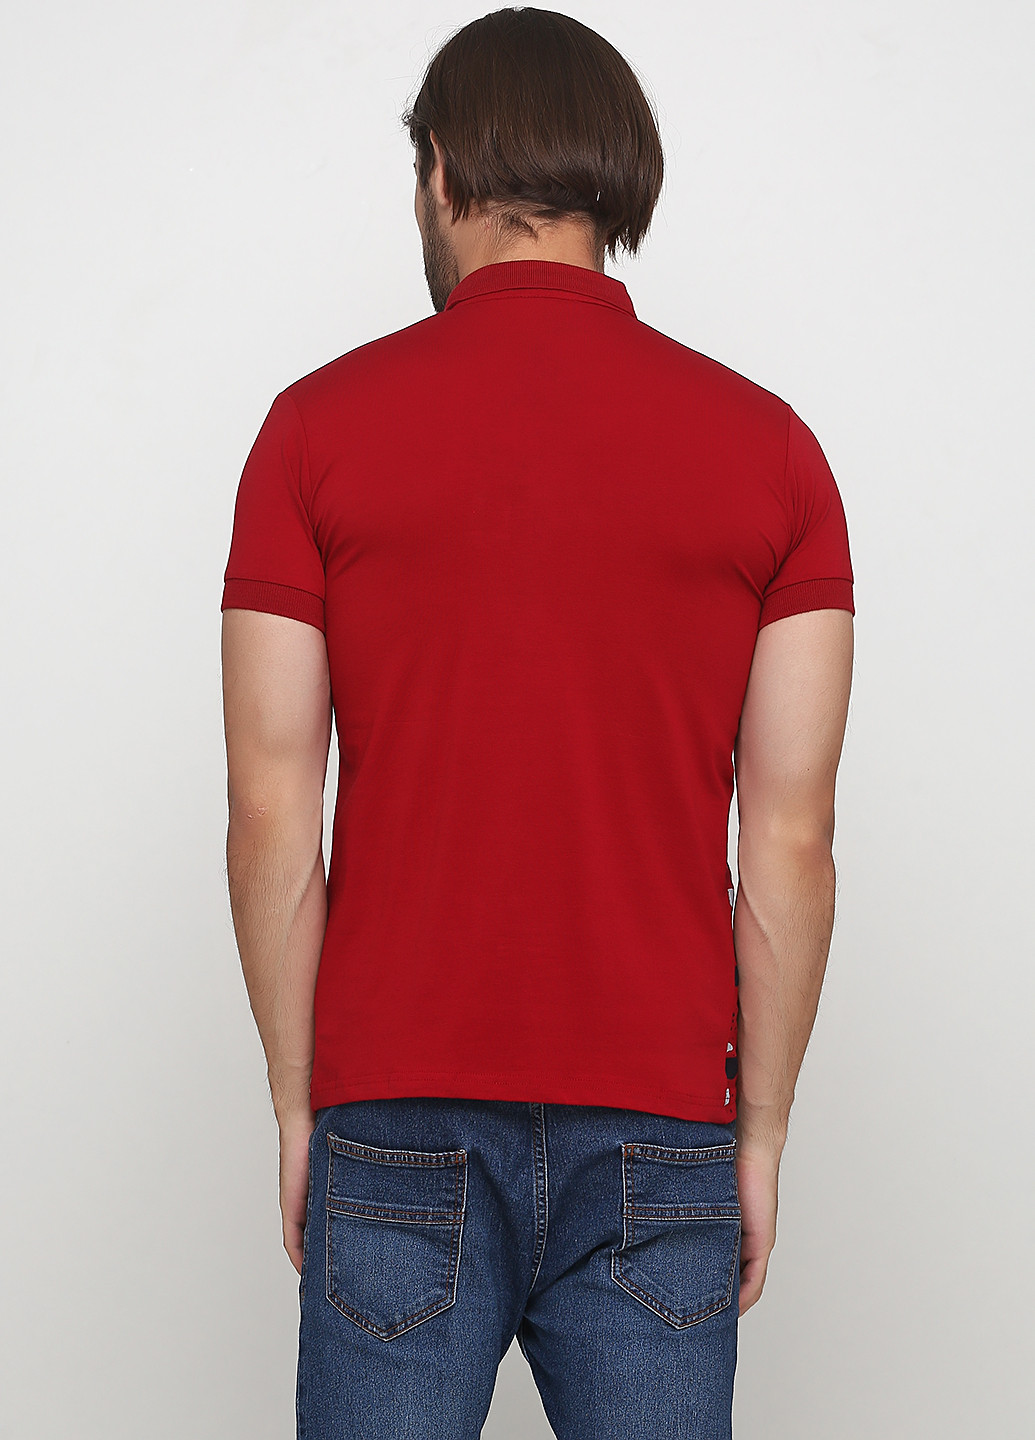 Красная футболка-поло для мужчин Golf с рисунком